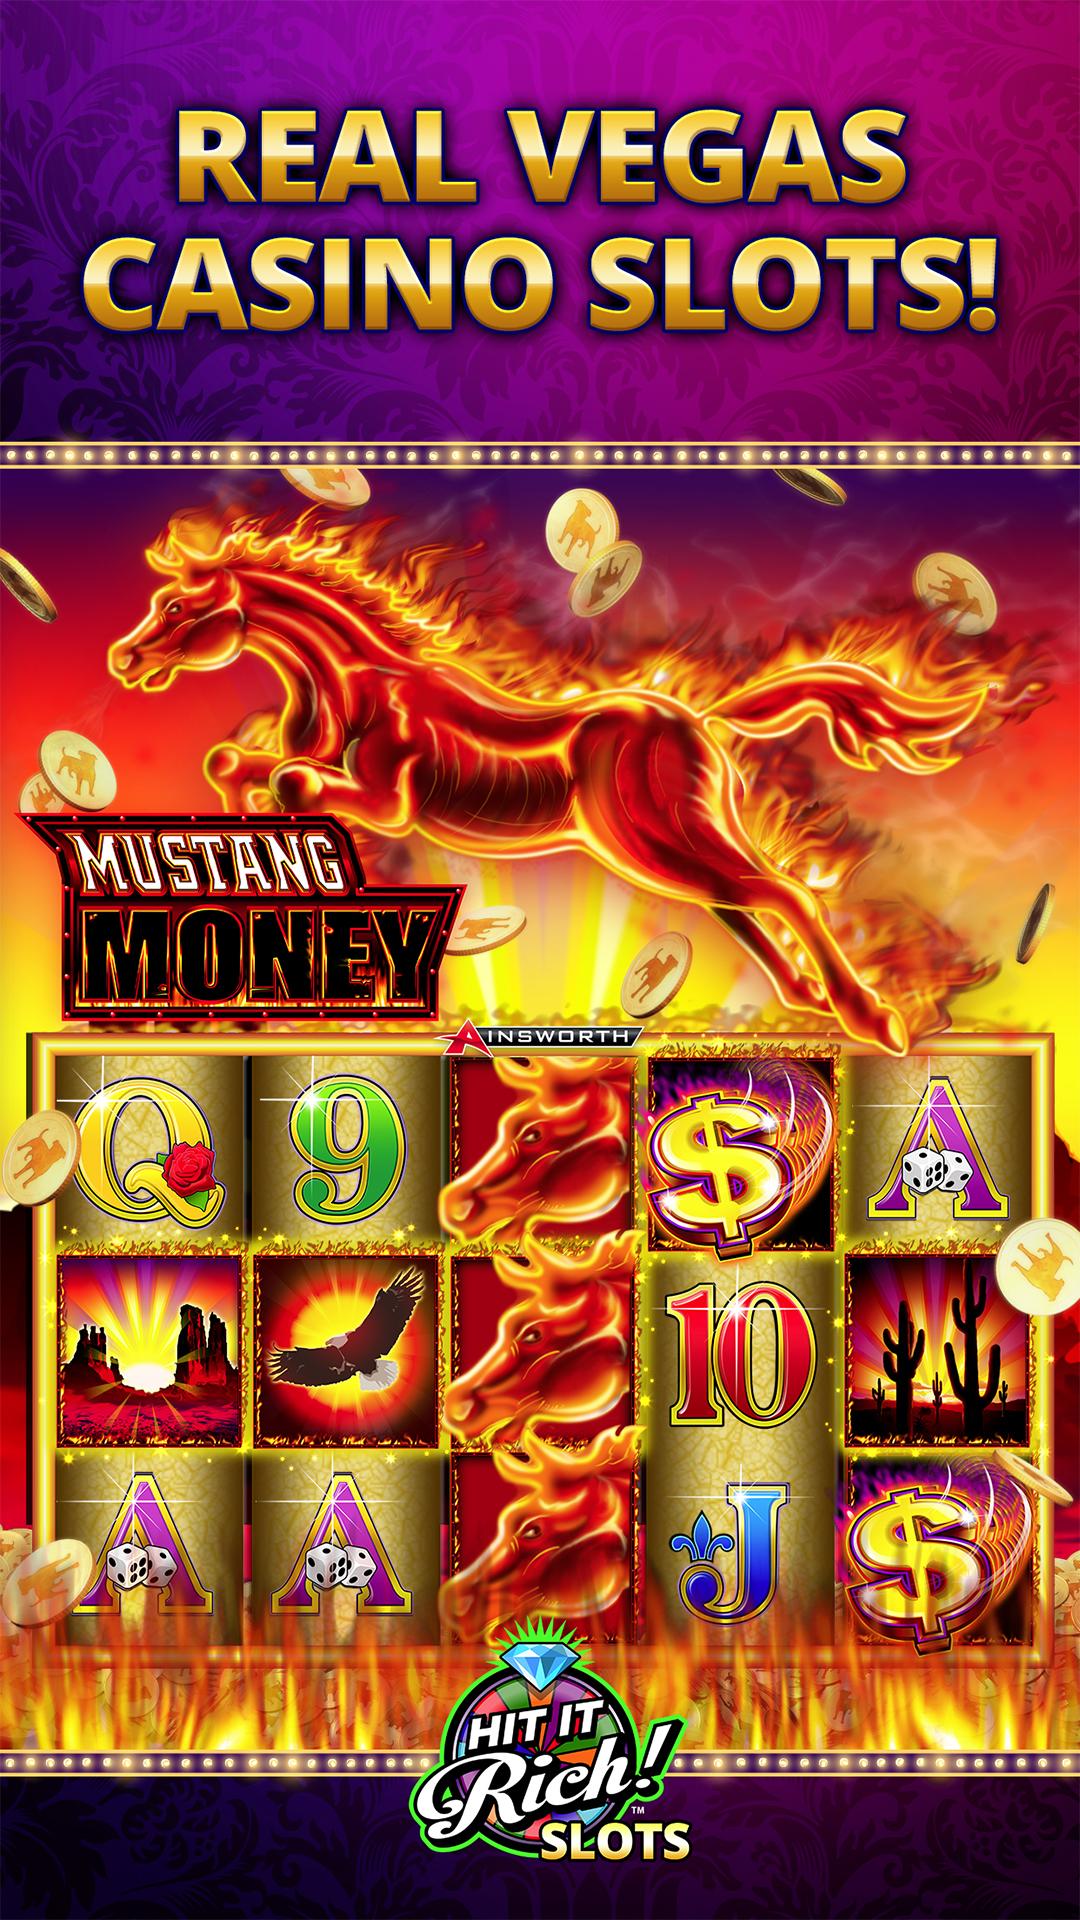 10 minimum deposit online casino